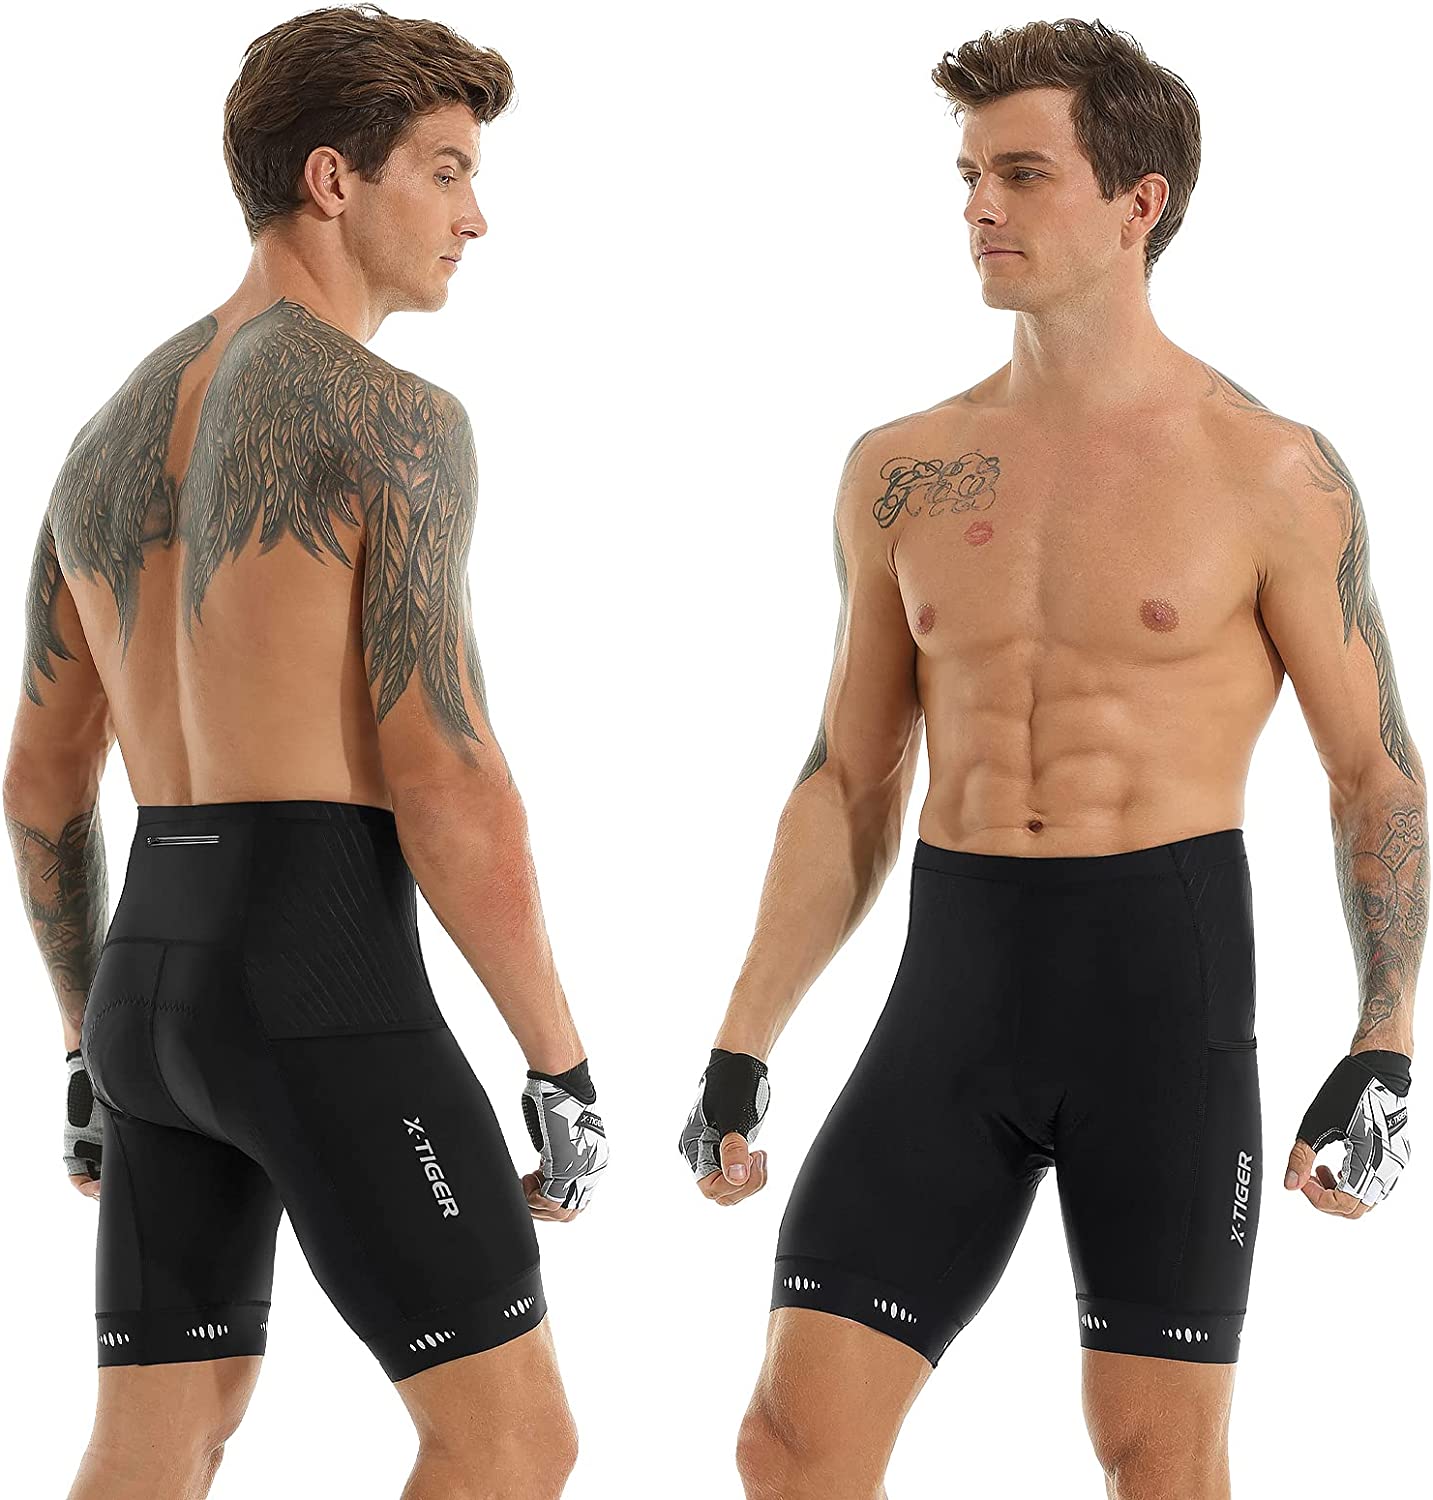 X-TIGER Cycling Shorts Anti-Slip Leg 5D Padded Bike Shorts with Pockets Breathable Biking Bicycle Motorcycle Half Pants Tights